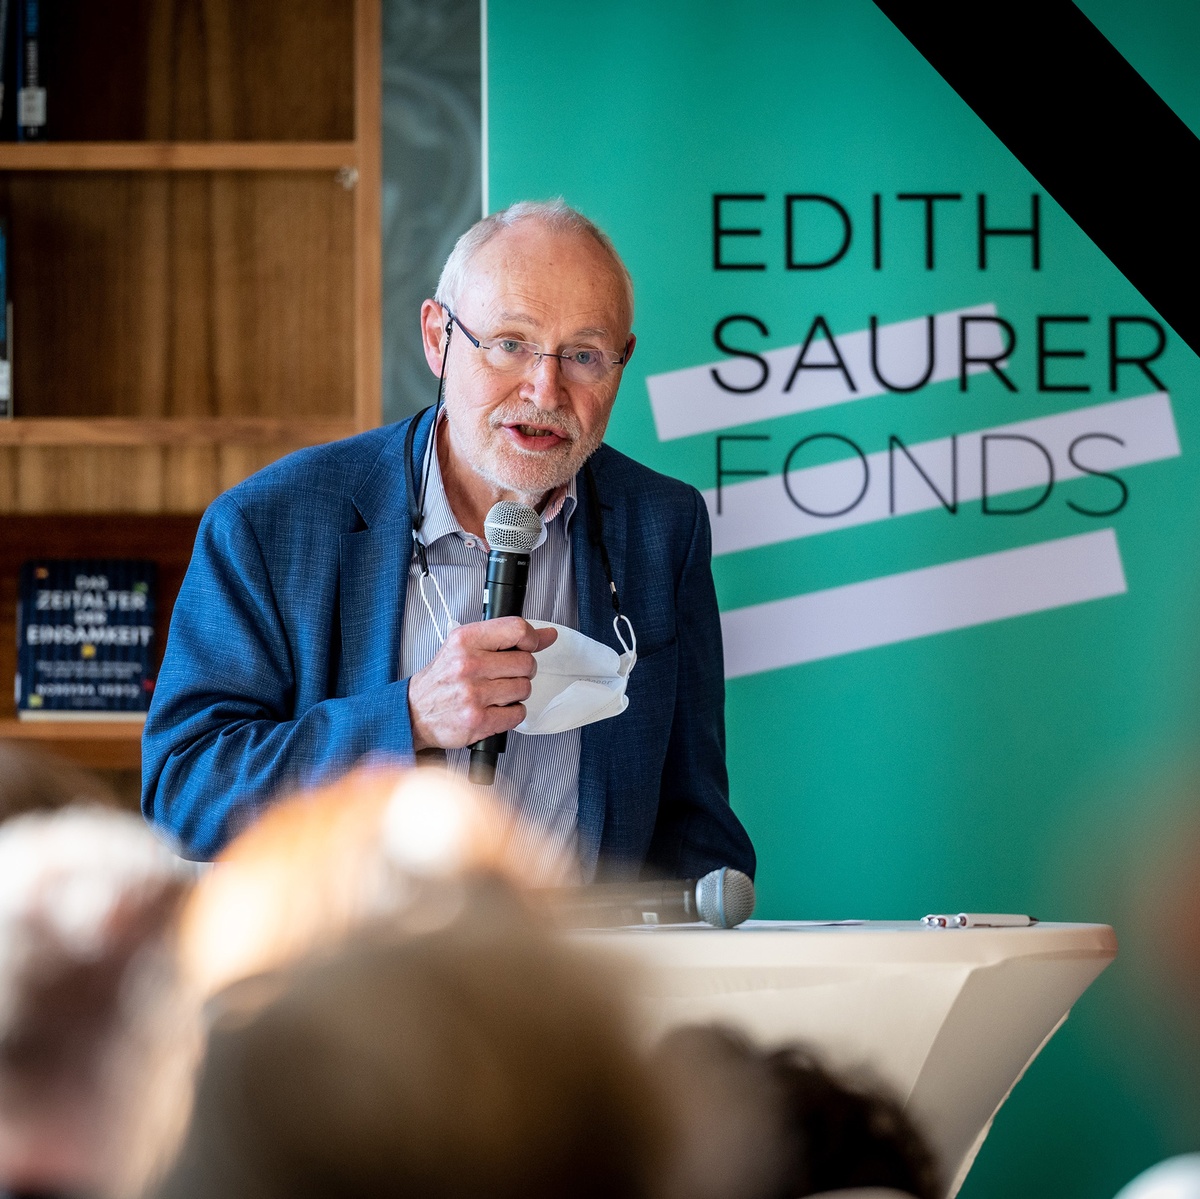 Prof. Josef Ehmer spricht in ein Mikrofon, darüber liegt ein Trauerflor. © Christopher Glanzl, Edith Saurer Fonds